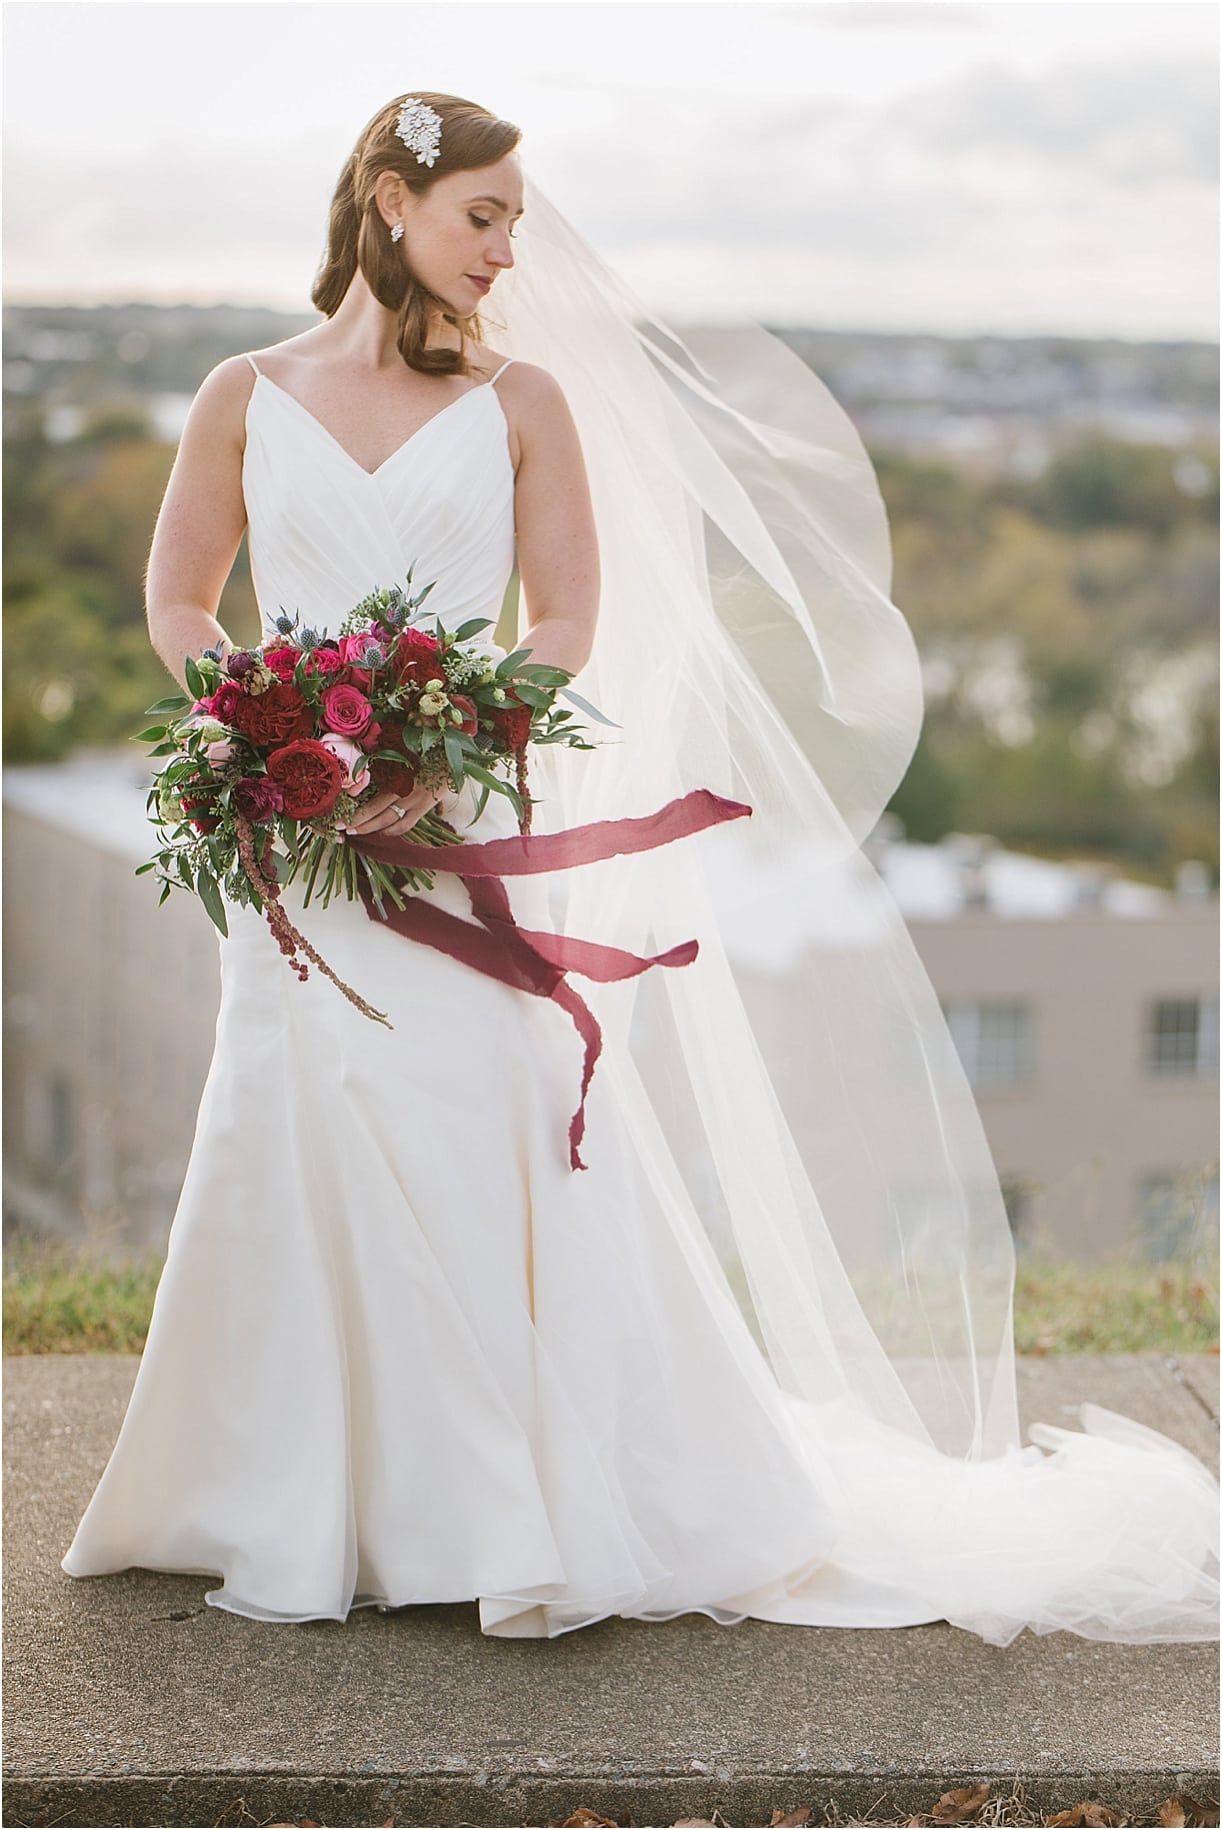 Moody Color Palette Richmond VA Wedding | Hill City Bride Virginia Blog